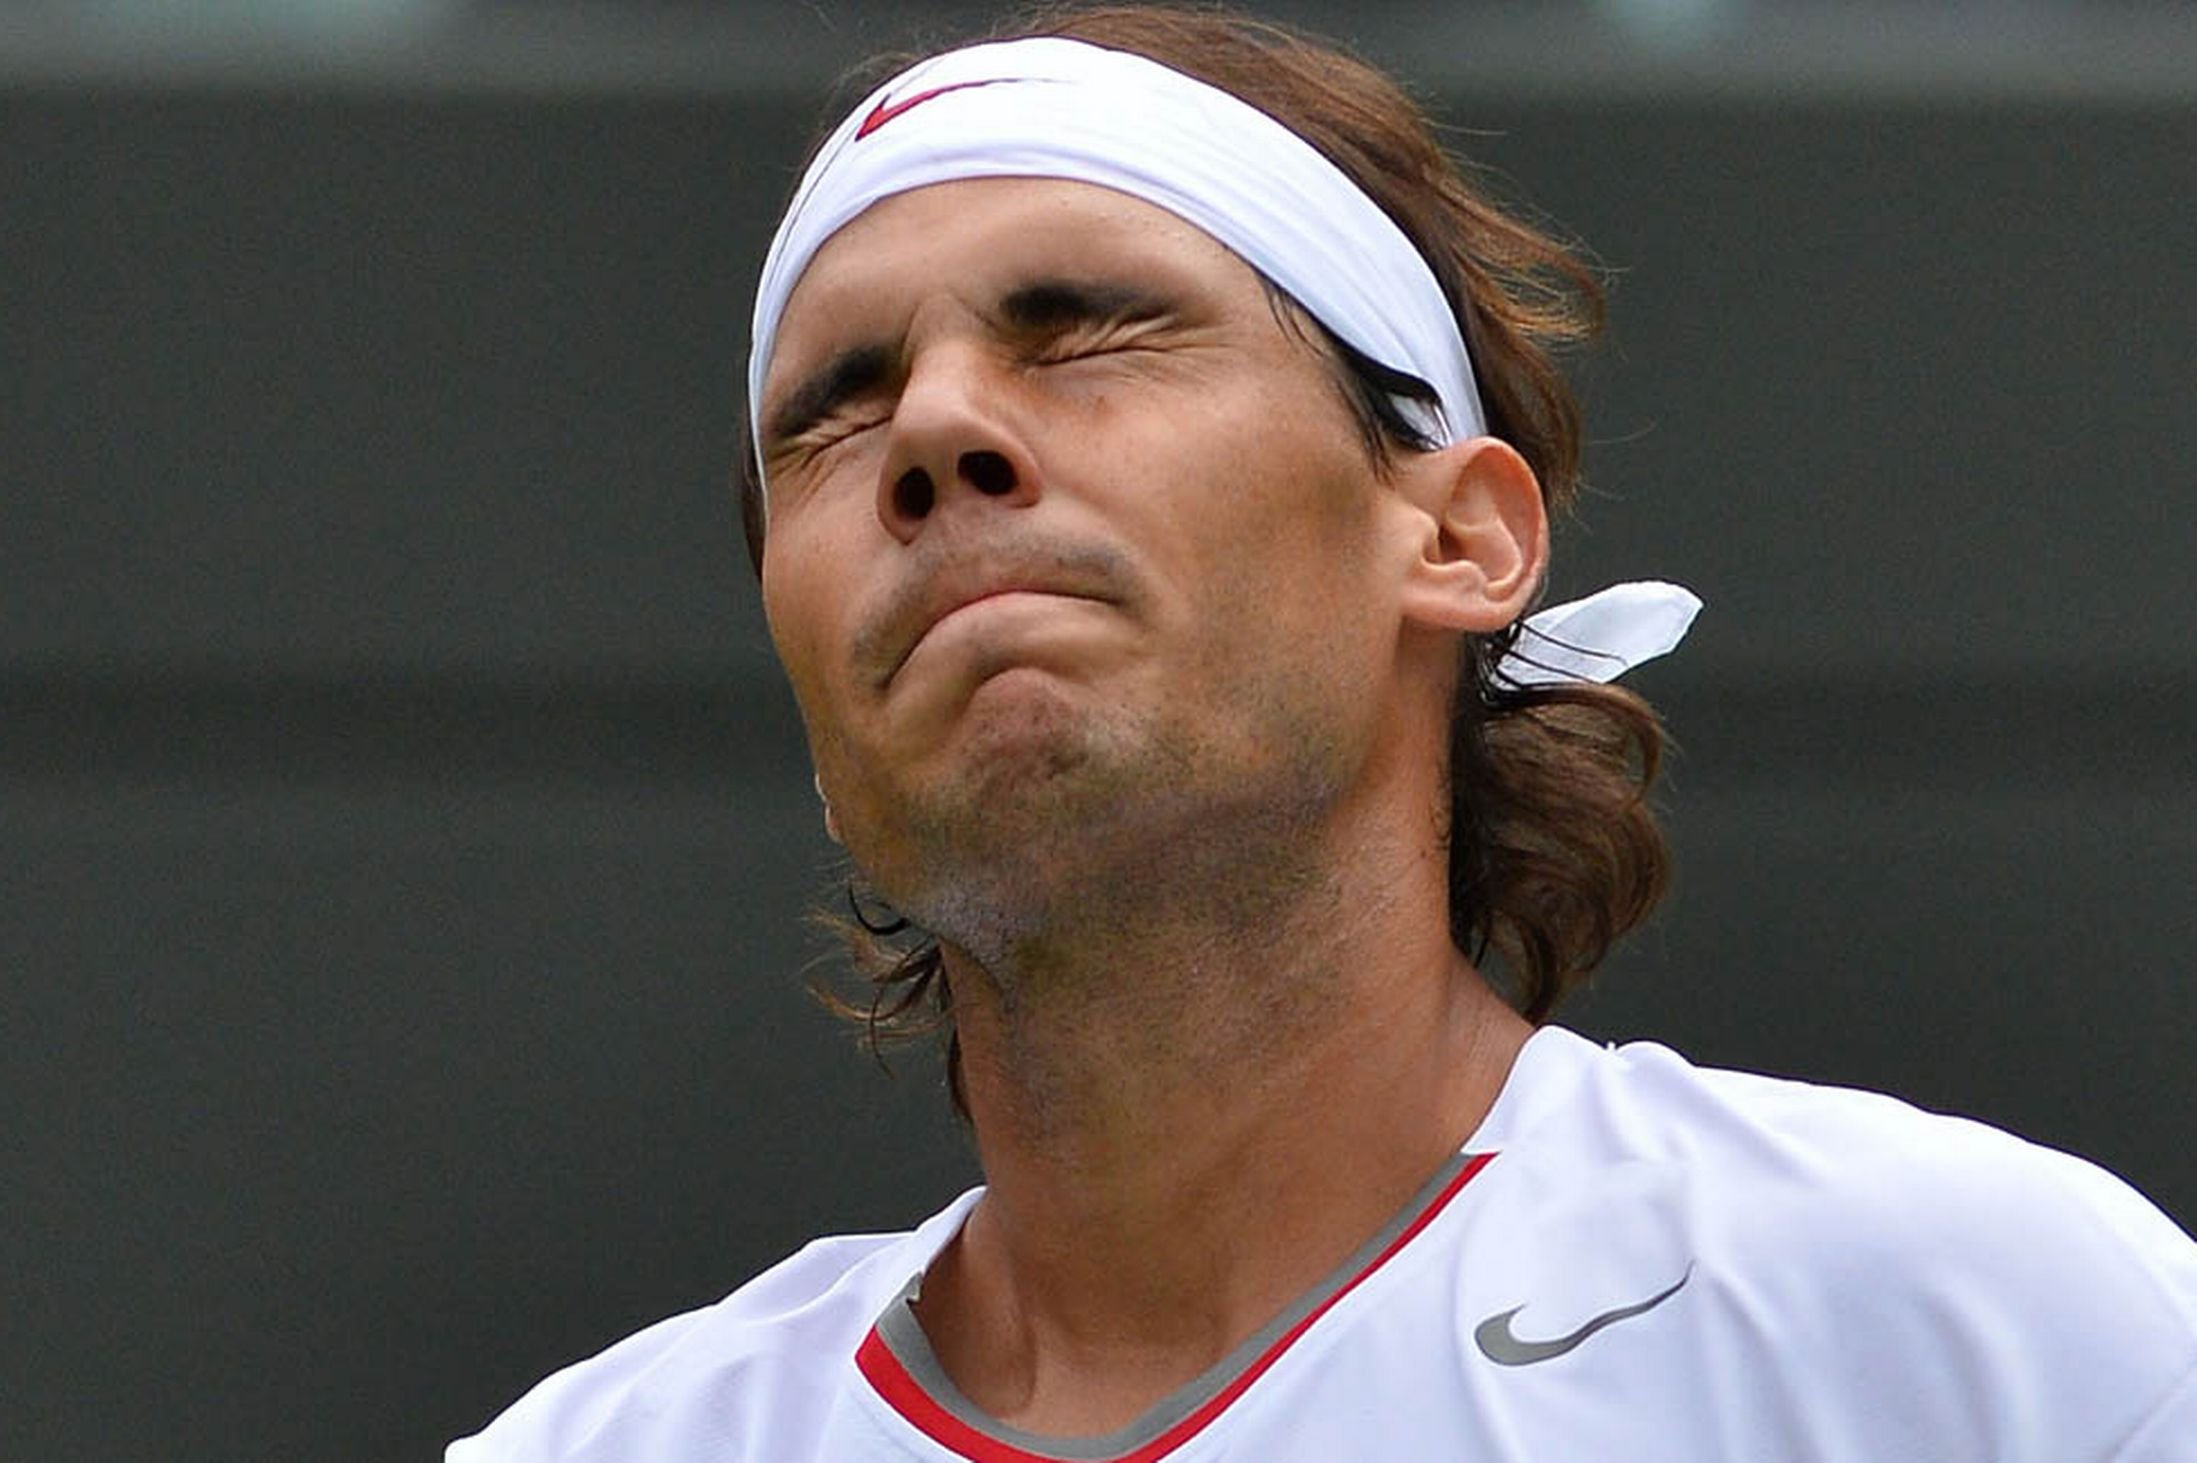 rafael, Nadal, Tennis, Hunk, Spain,  39 Wallpaper